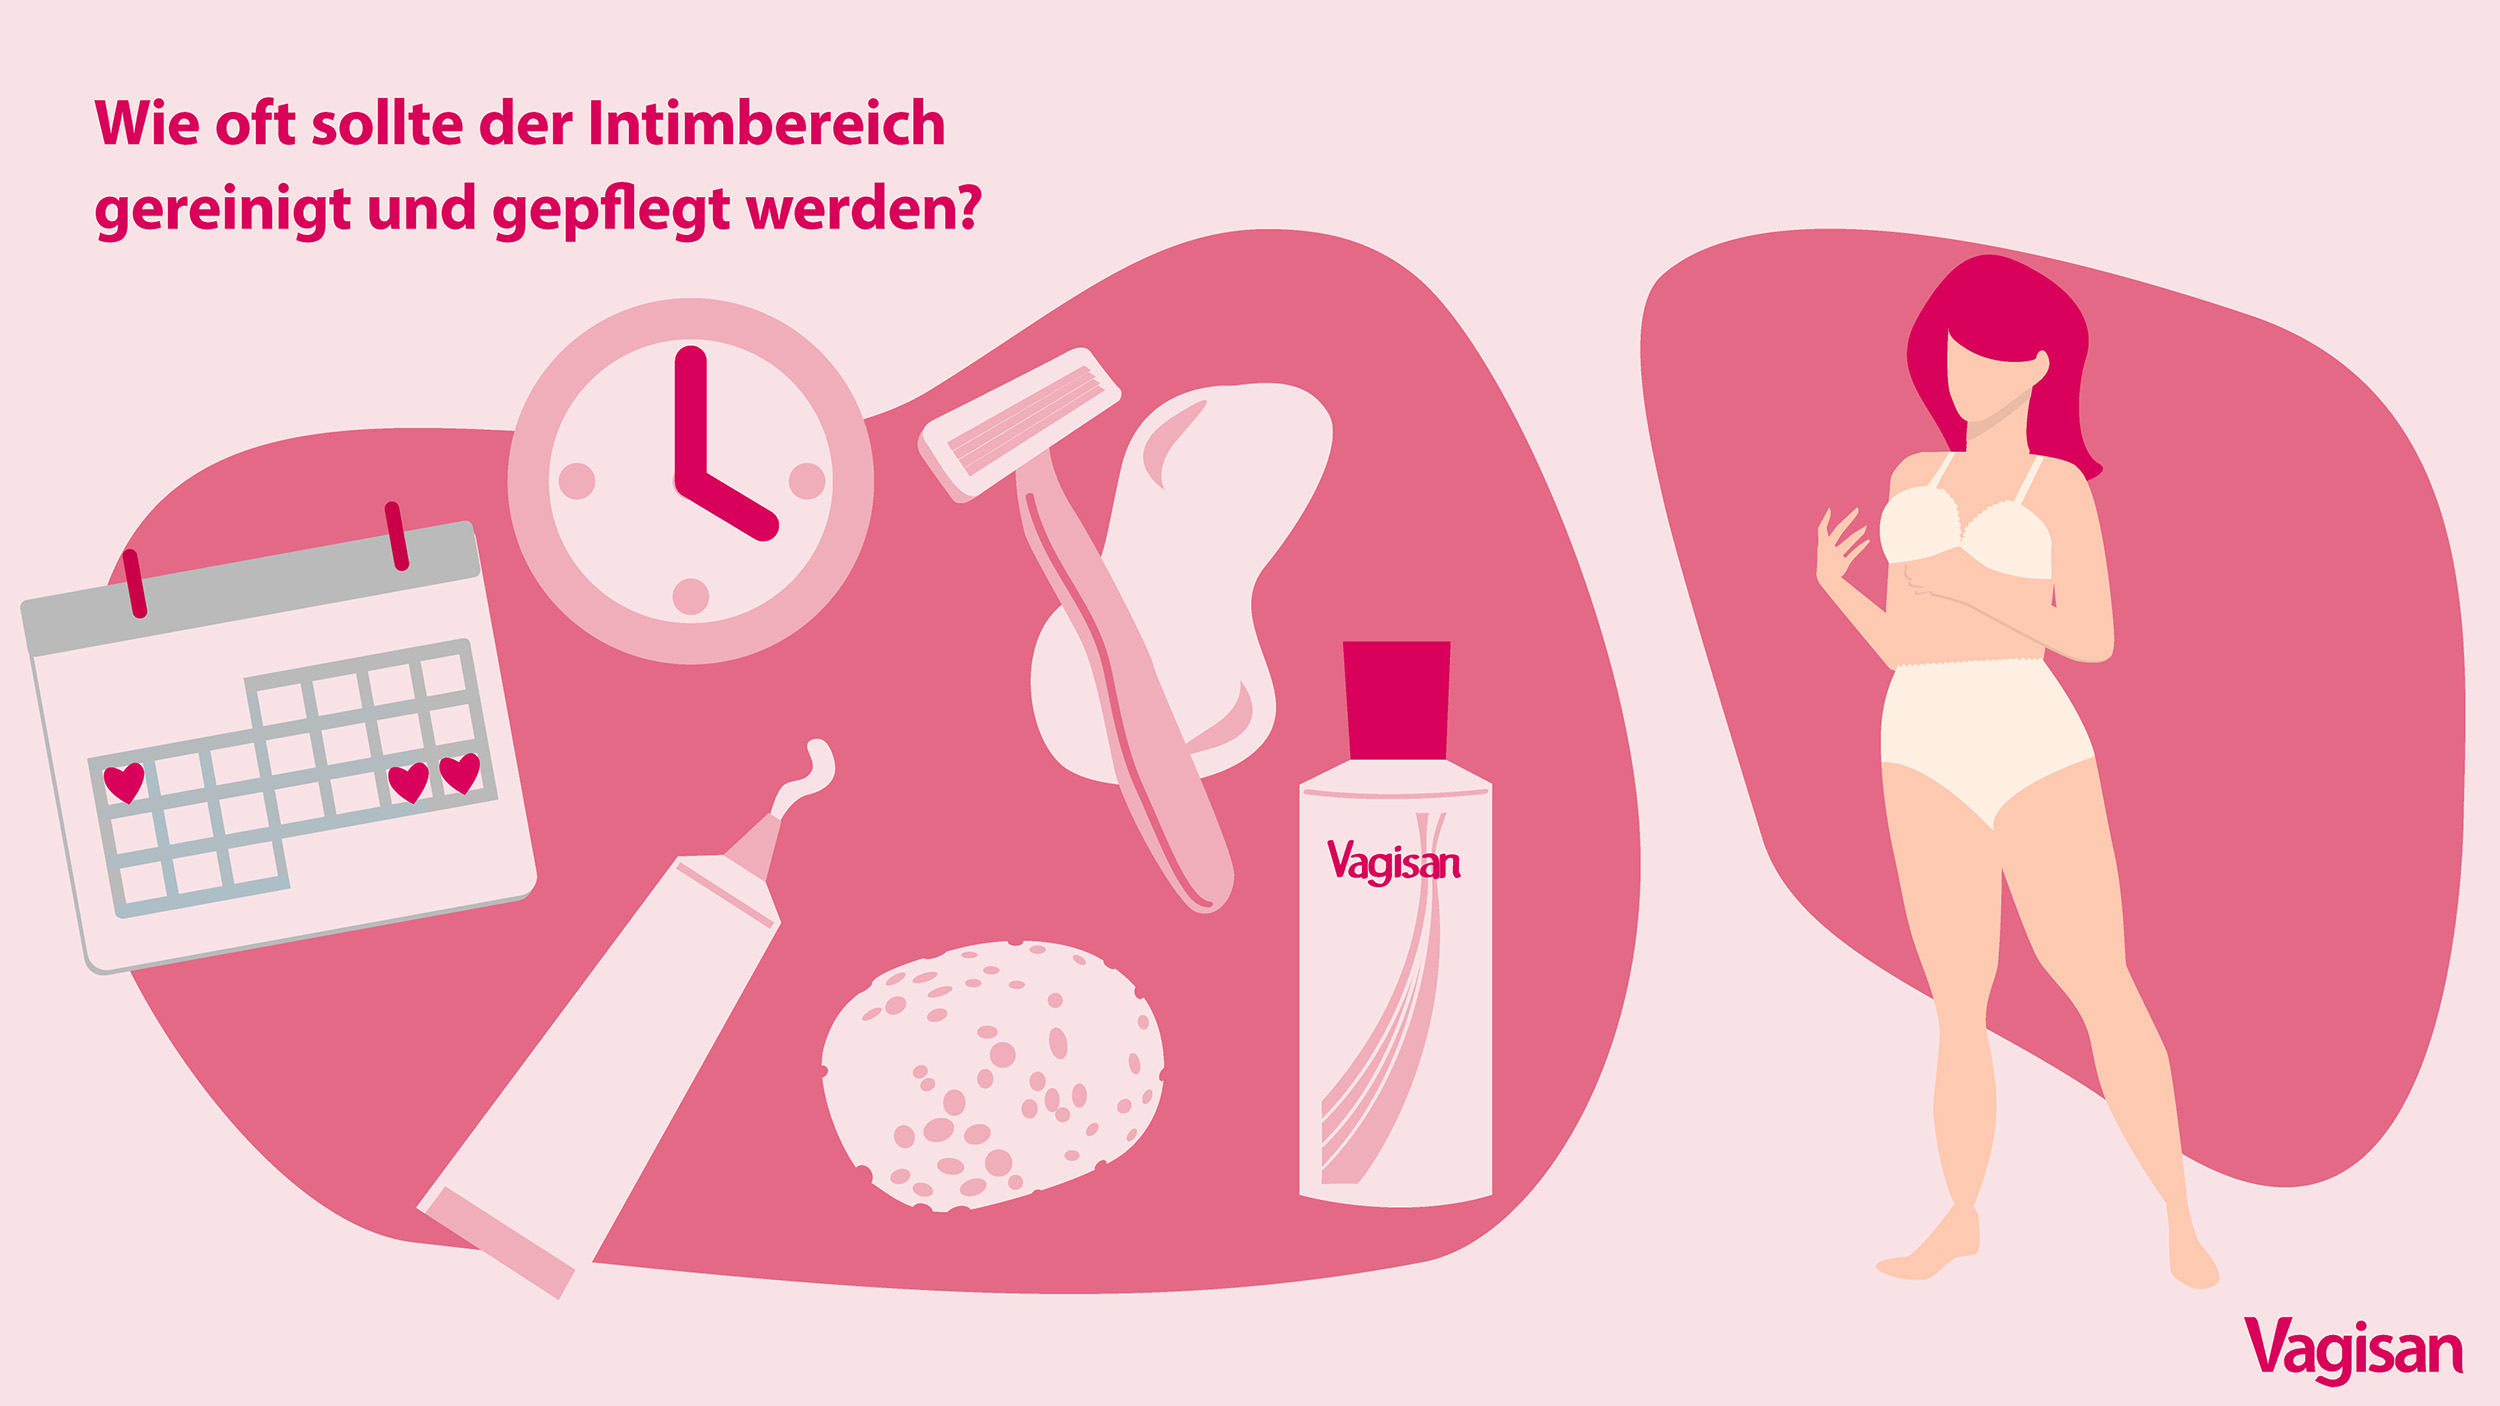 Stilisierte Illustration einer Frau mit Intimpflege-Produkten und einer Uhr als Sinnbild für die Frage wie oft die Intimpflege bei einer Frau durchgeführt werden sollte